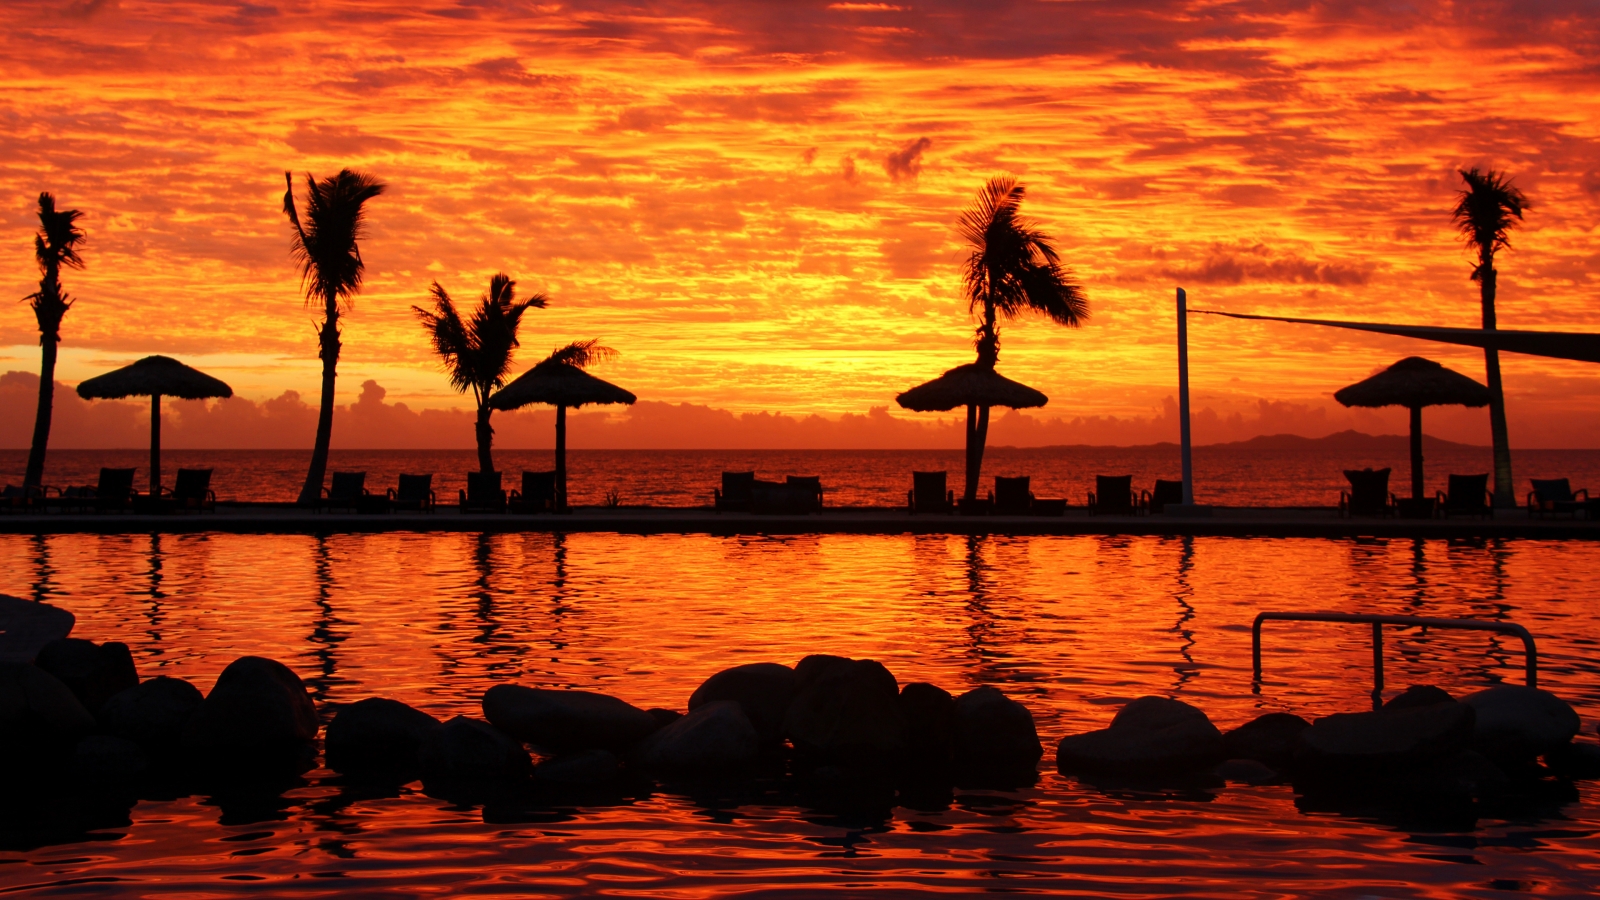 Fijian Sunset for 1600 x 900 HDTV resolution